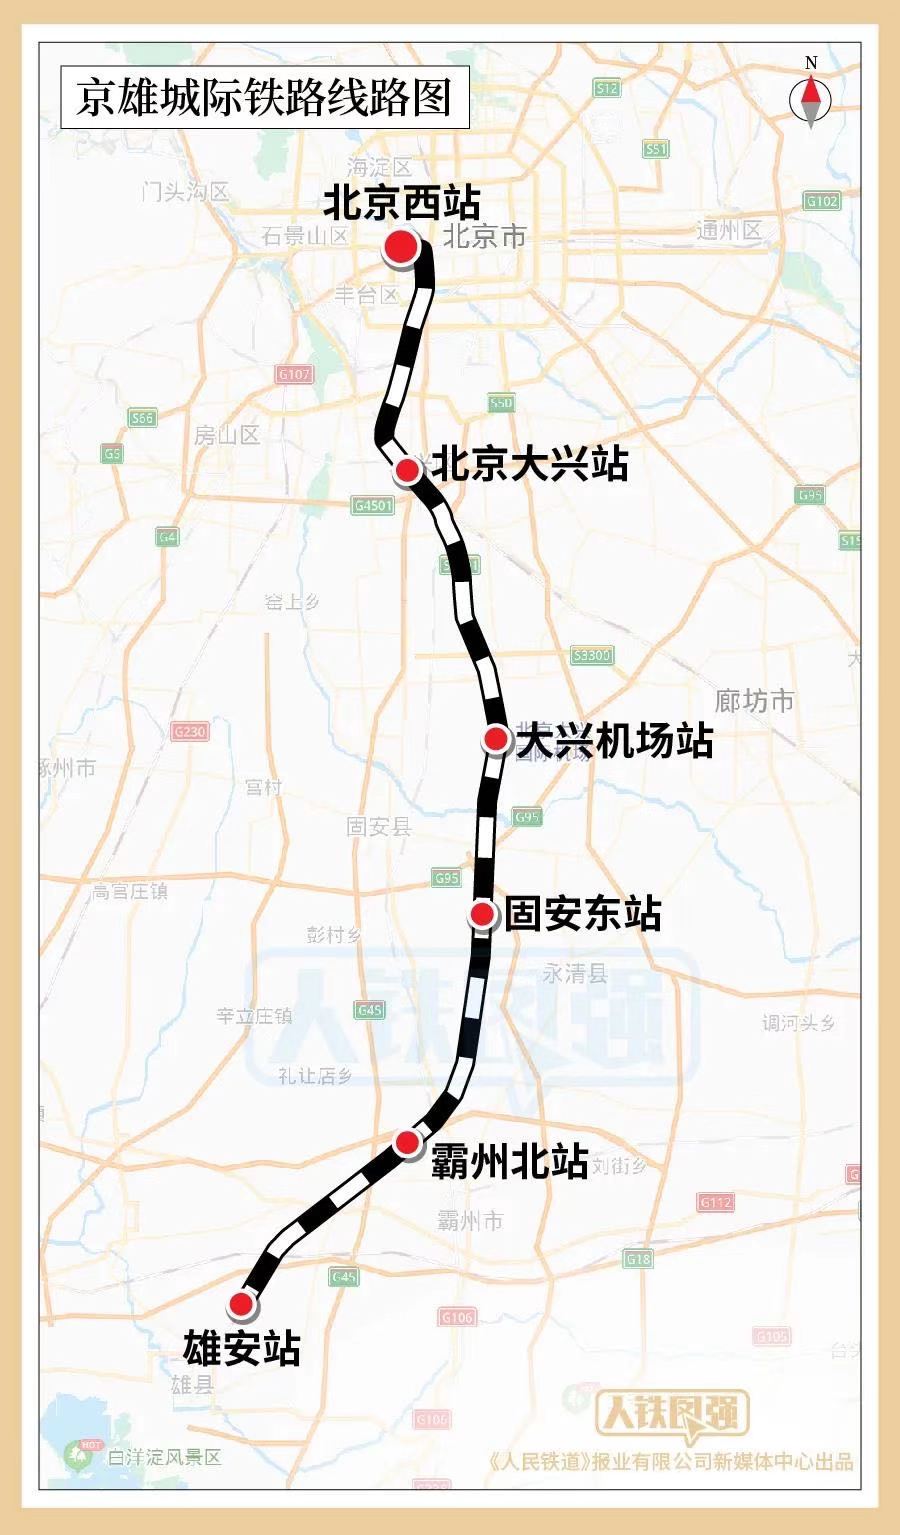 向南途经北京大兴区,河北省廊坊市,霸州市至雄安新区,线路全长91公里